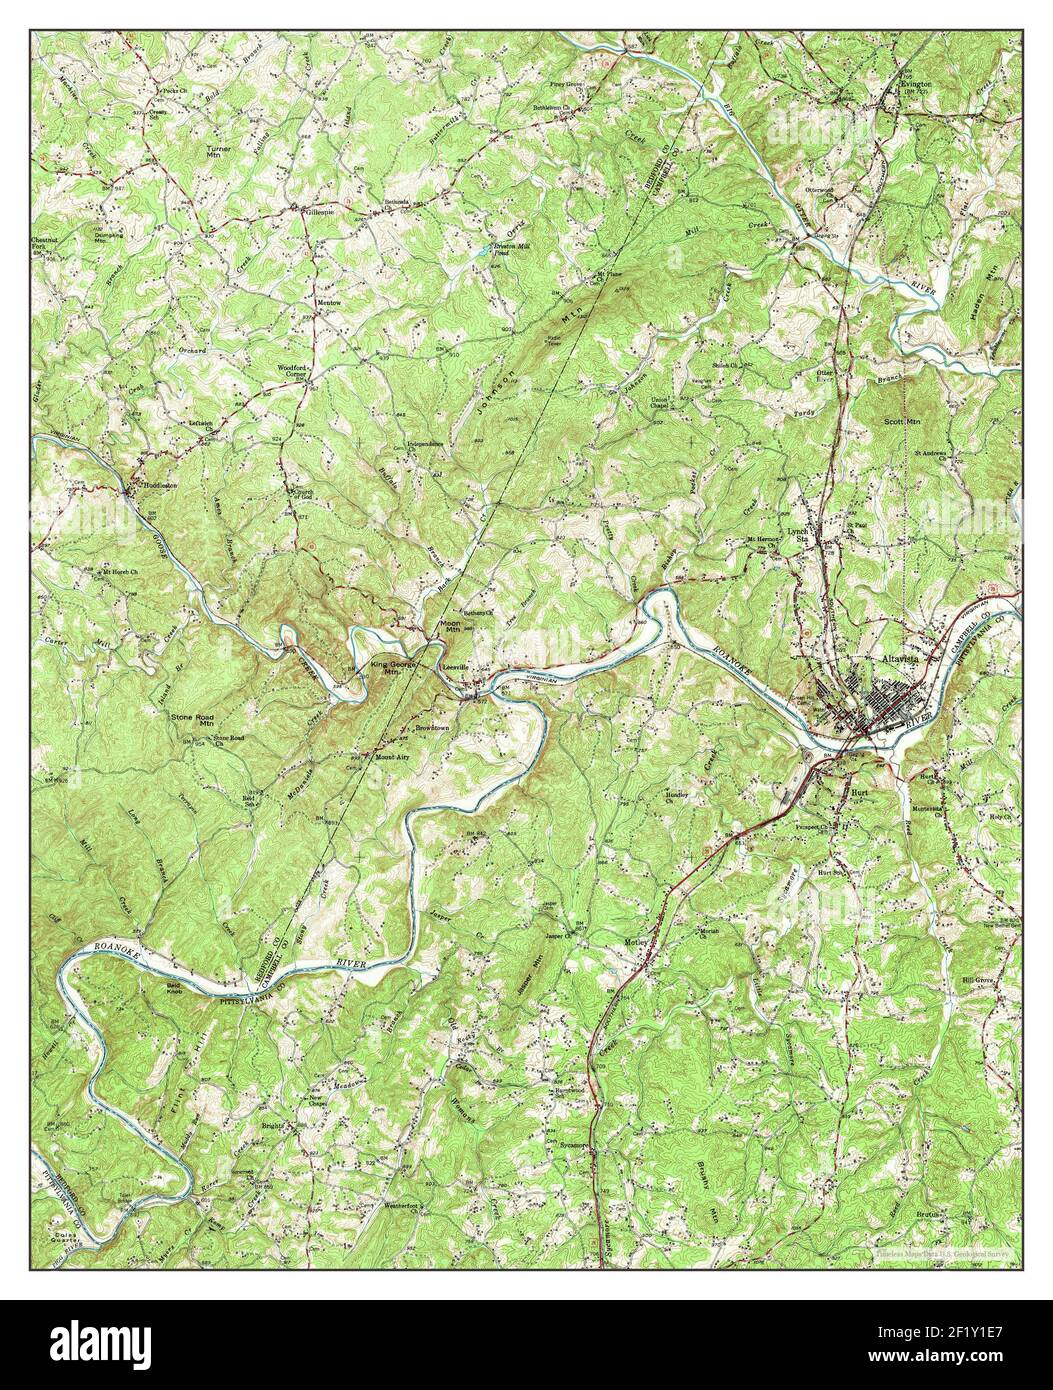 Altavista, Virginia, Karte 1951, 1:62500, Vereinigte Staaten von Amerika von Timeless Maps, Daten U.S. Geological Survey Stockfoto